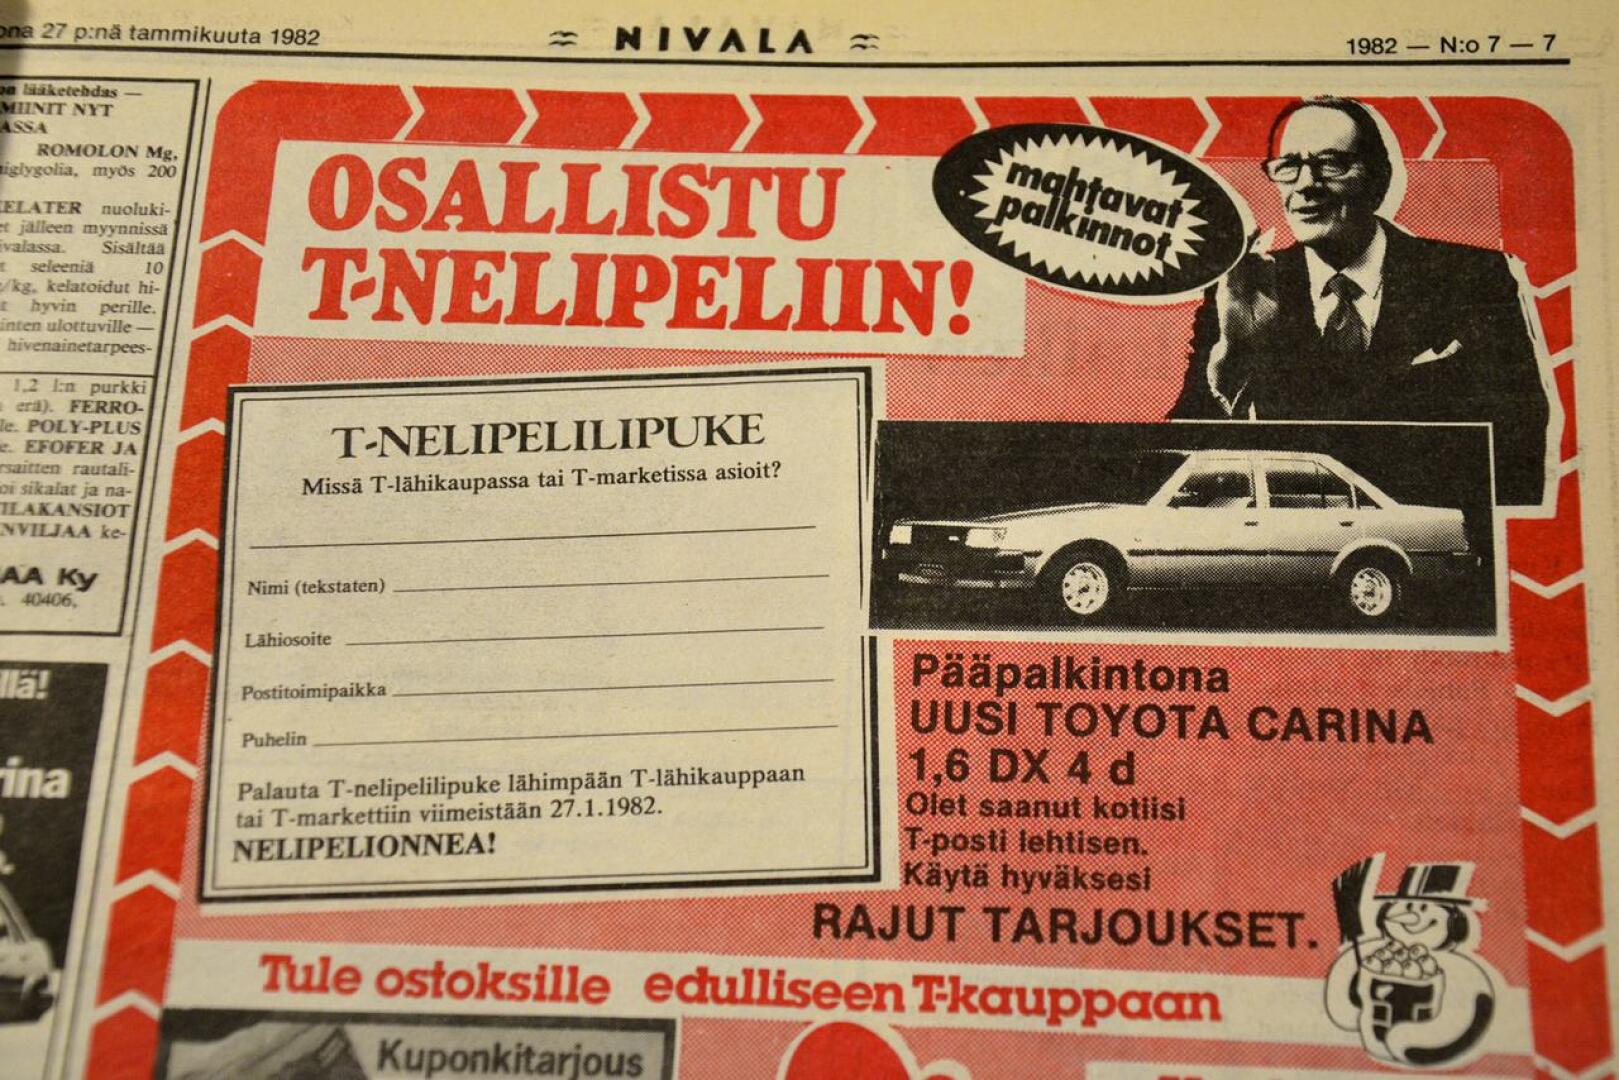 Nivala-lehdessä kerrottiin työllisyyden huonontumisesta 40 vuotta sitten. T-kauppa puolestaan innosti pelaamaan T-nelinpeliä, jossa oli uusi henkilöauto pääpalkintona.